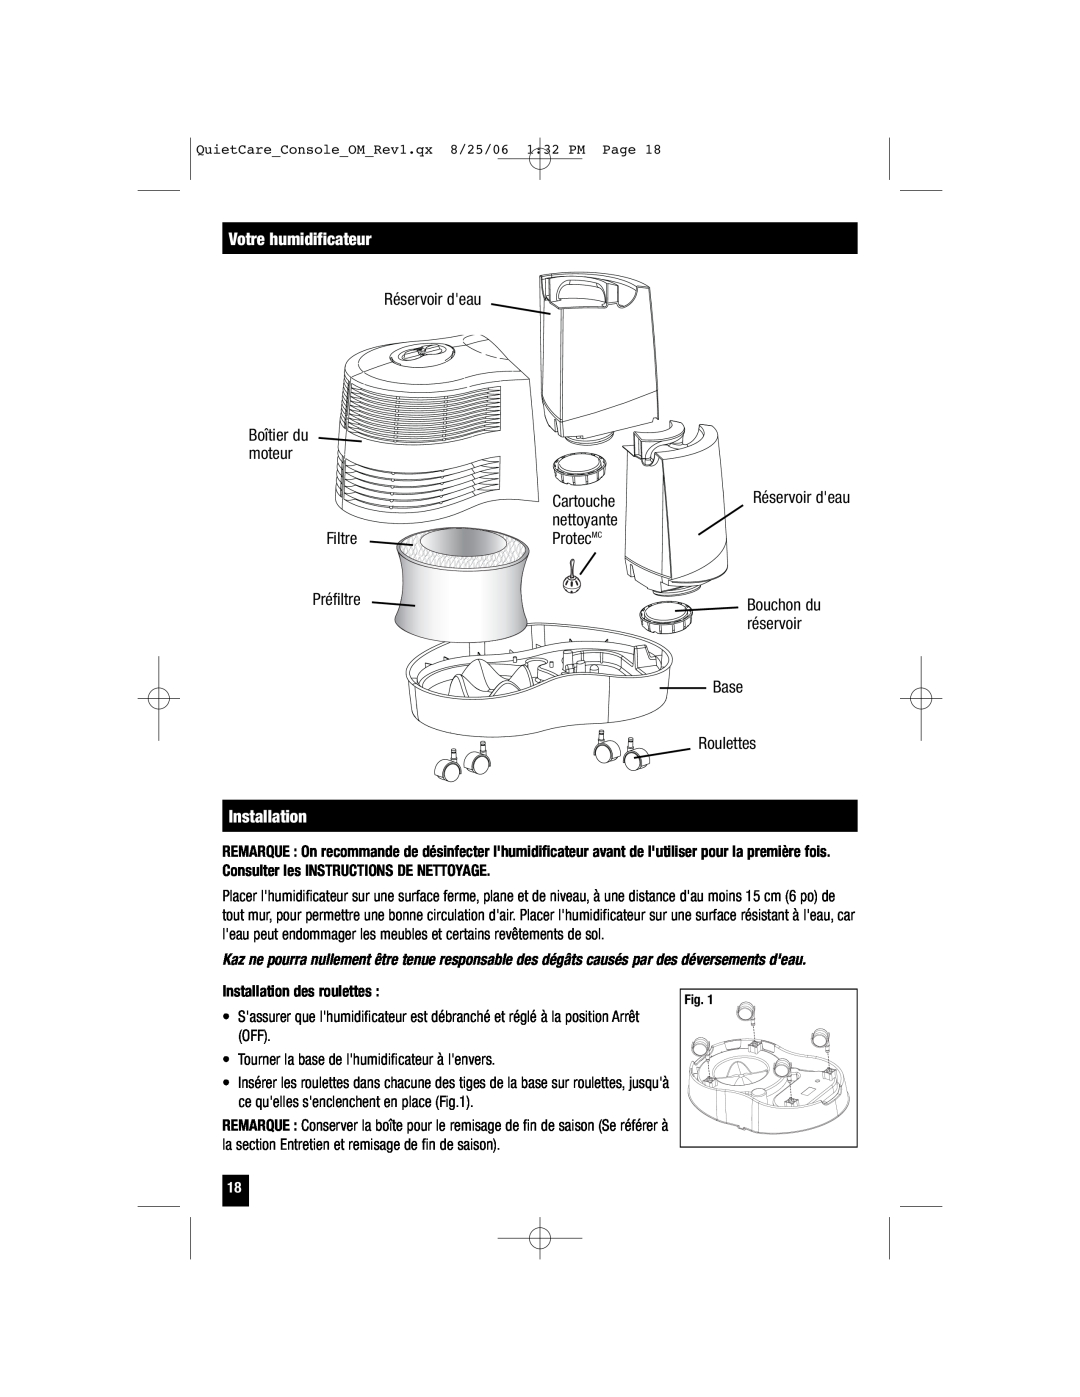 Honeywell HCM-6009 owner manual Réservoir deau, Cartouche, nettoyante, Filtre, ProtecMC, Préfiltre, réservoir 